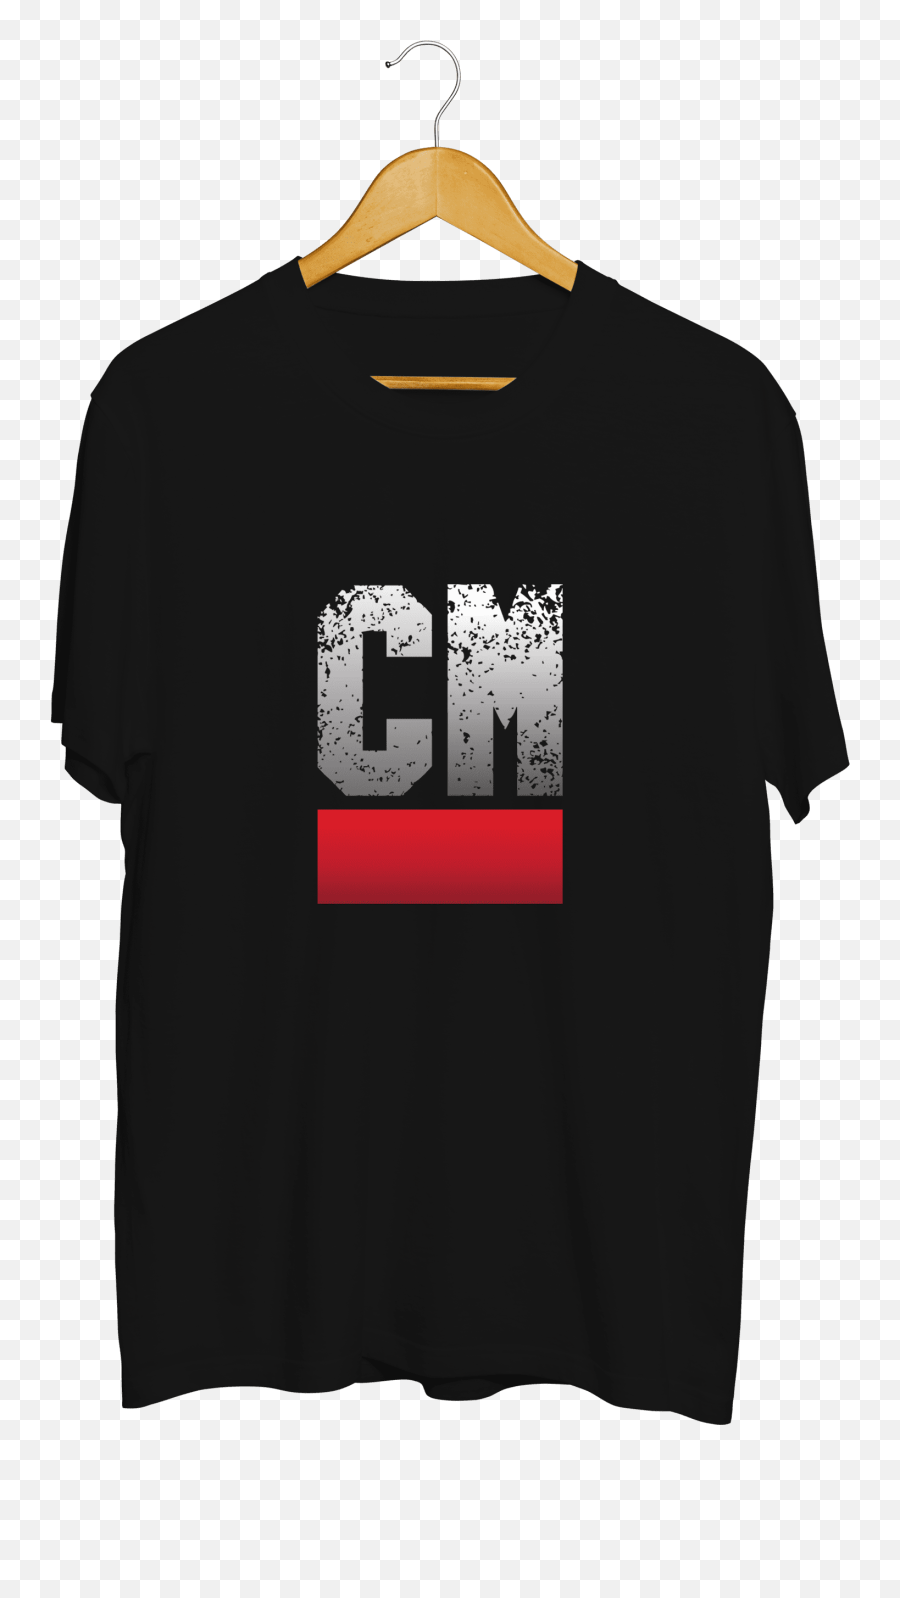 Criminal Minds Club - Alone T Shirt Png,Criminal Minds Logos